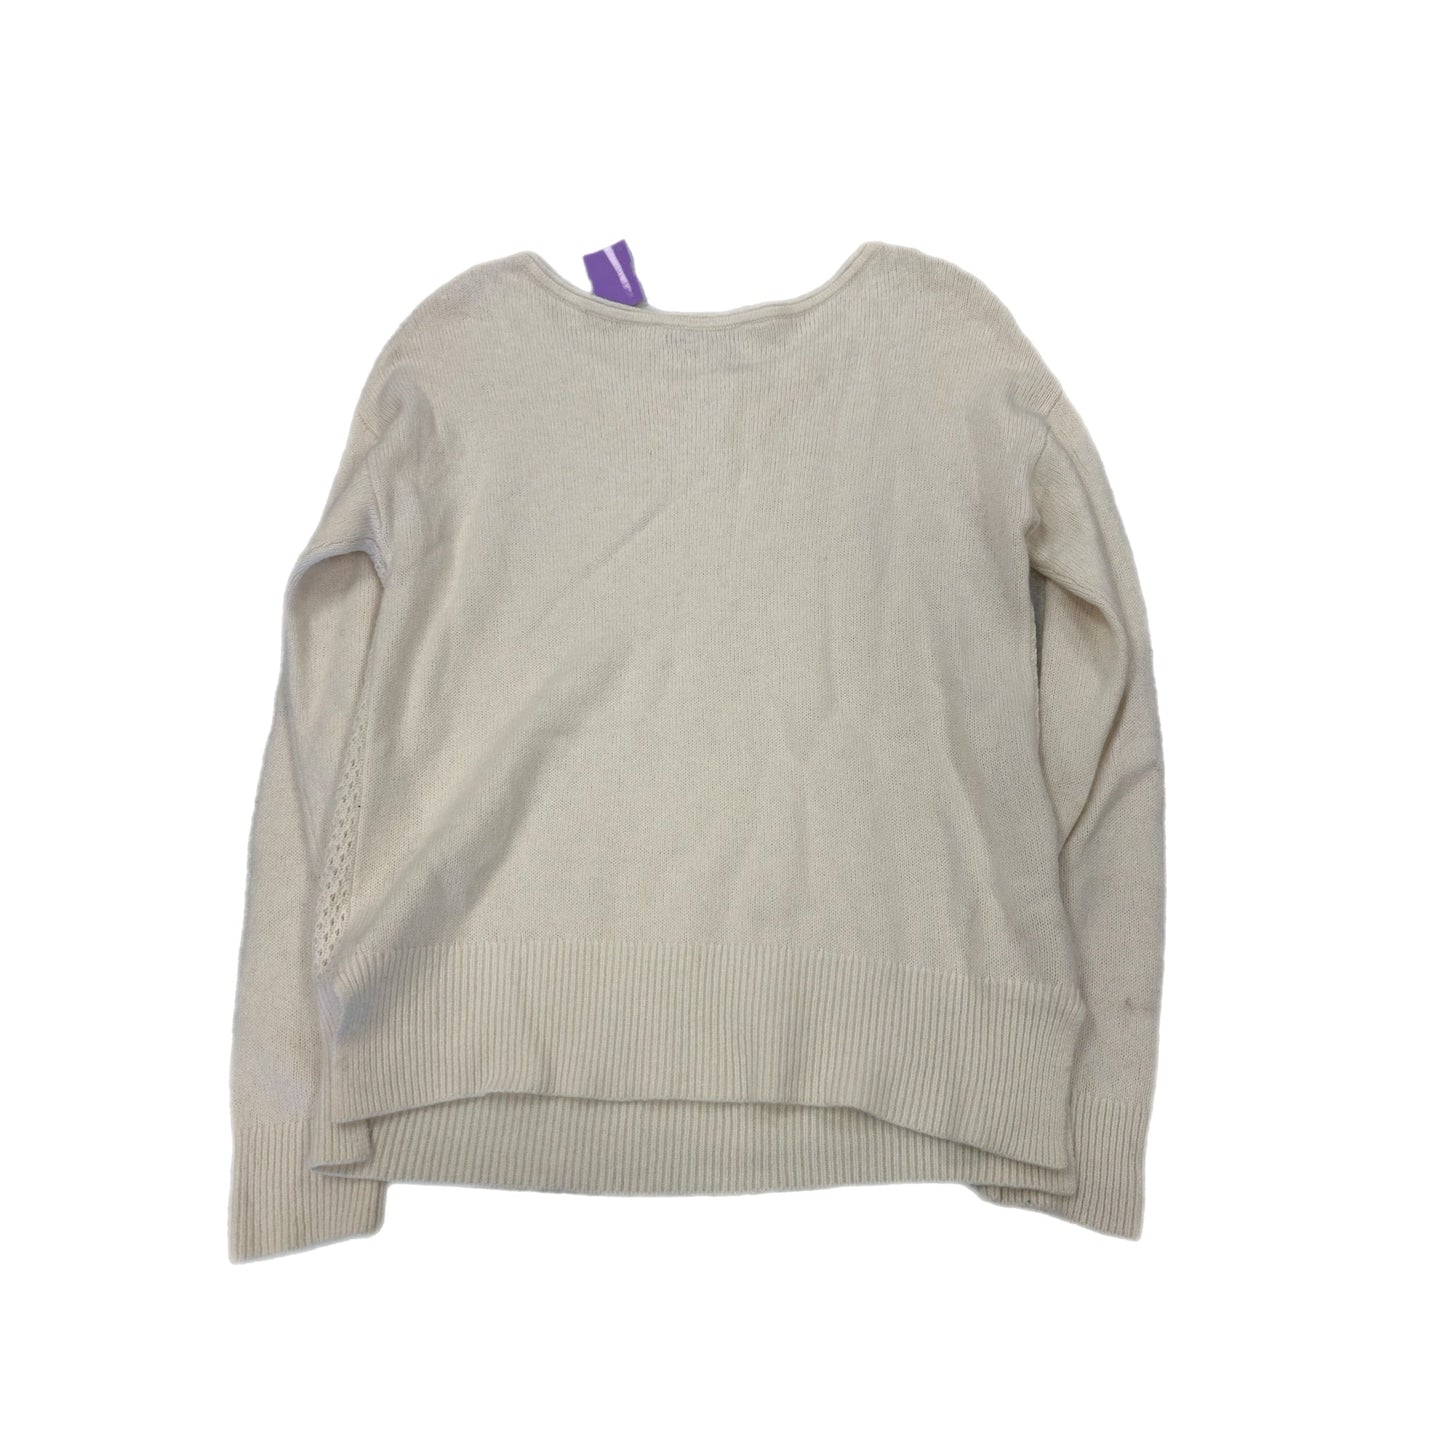 Sweater By Loft  Size: 14